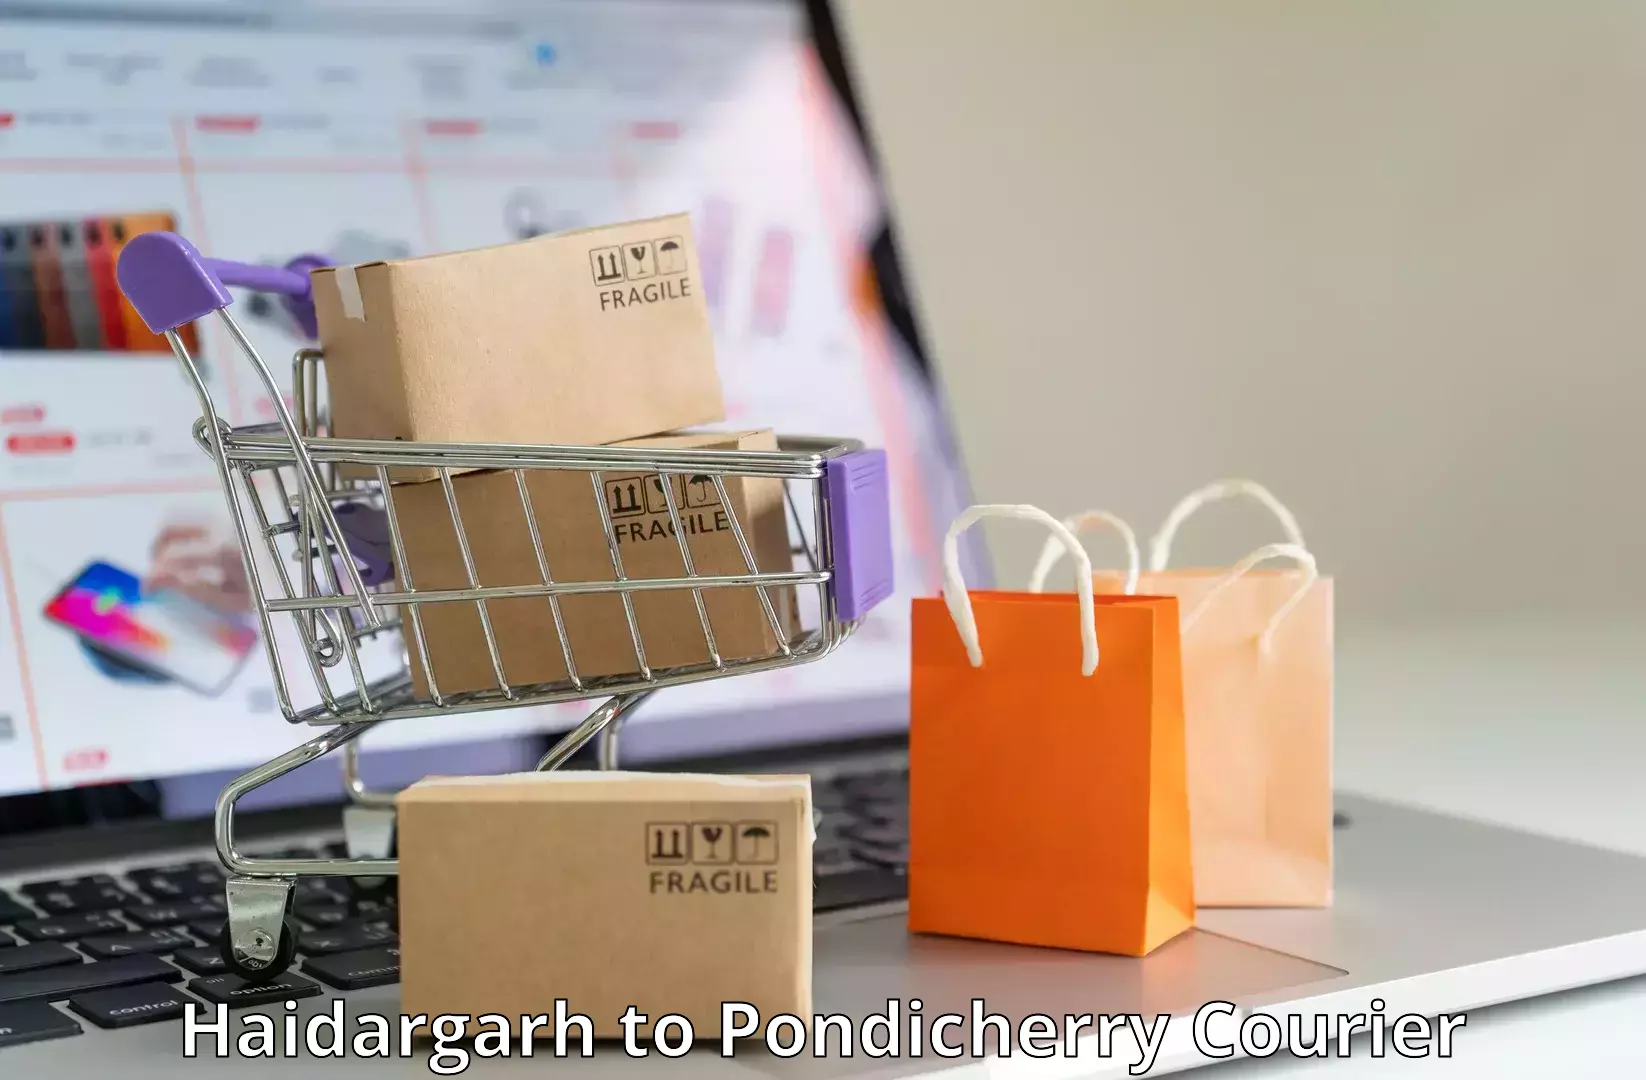 Customer-friendly courier services Haidargarh to NIT Puducherry